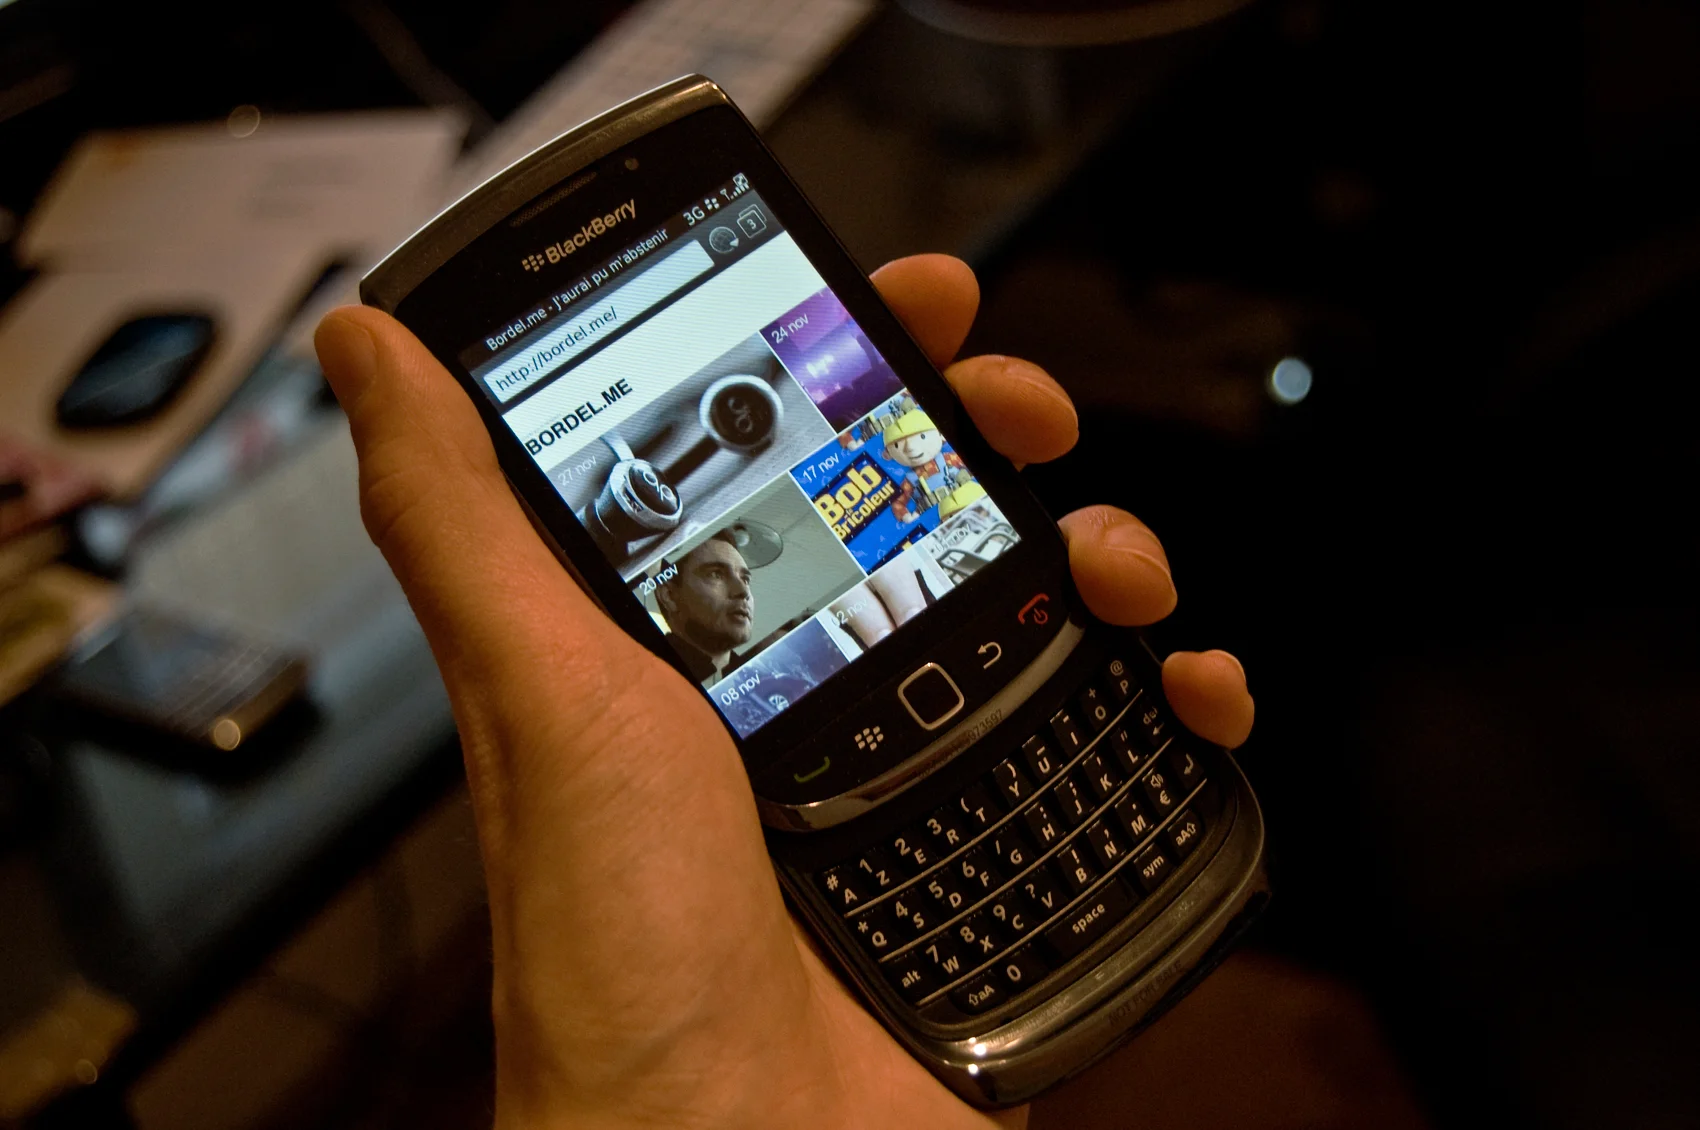 Любой телефон BlackBerry в 2000-х был признаком высокого статуса, богатства, а иногда и понтов. Устройства этой фирмы славились нерушимой защитой данных, поэтому рабочий BlackBerry был у Барака Обамы. Удобная QWERTY-клавиатура плюс цветной экран также делали эти устройства желанными во всем мире не только для бизнесменов, но и для обычных смертных.